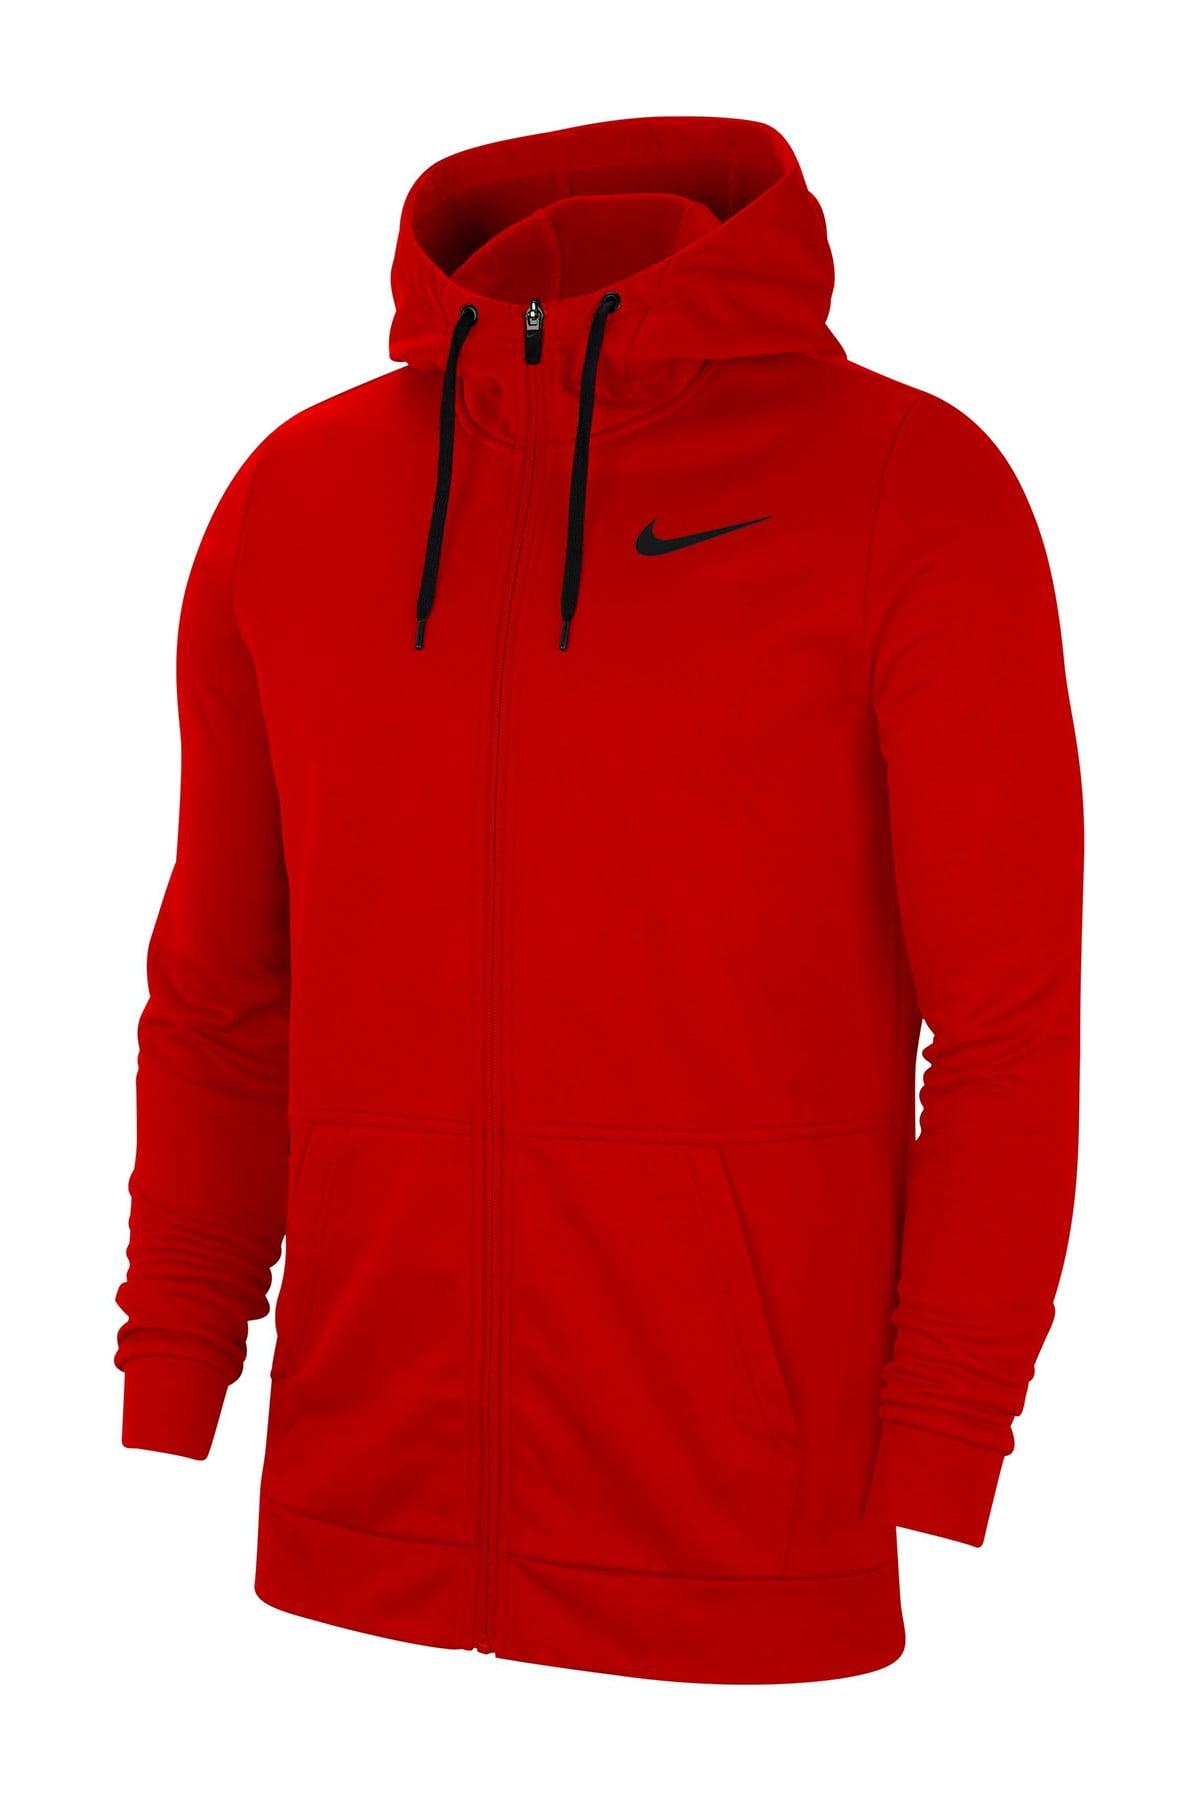 Nike Therma Fleece Full Zip Training Hoodie in Red for Men - Lyst